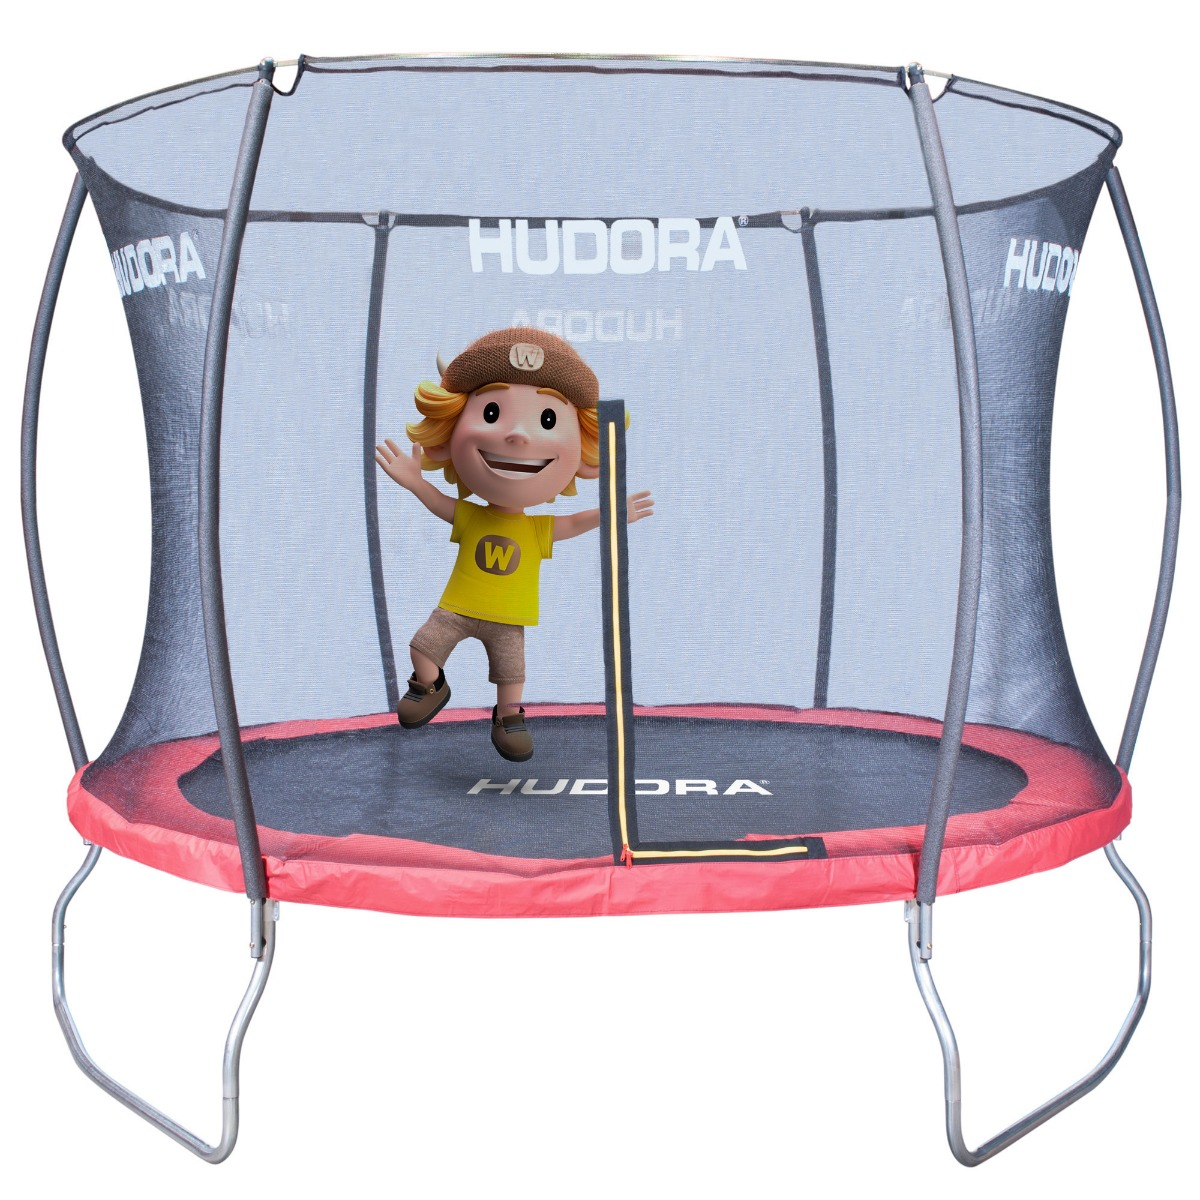 Hudora für Fantastic 300V Kinder Trampolin outdoor